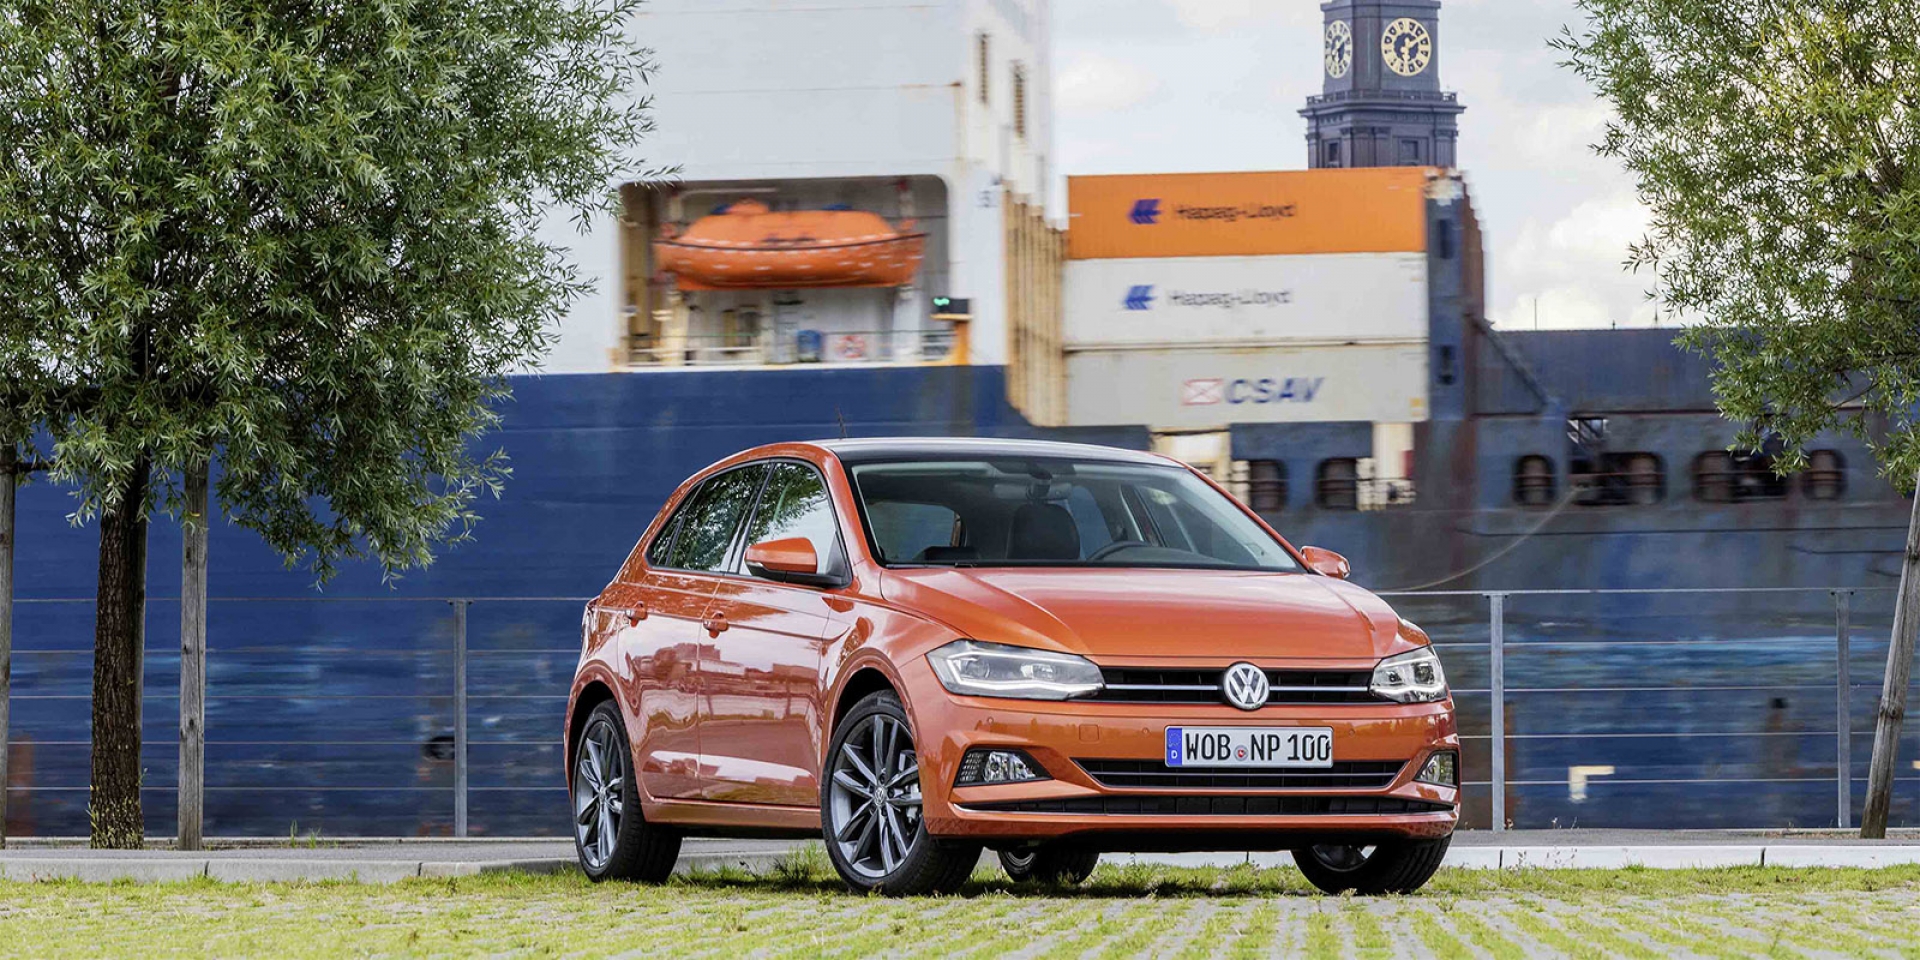 官方新聞稿。入主Volkswagen德制安全駕乘 現購Sharan、The new Polo可享低頭款、低月付等多元購車專案